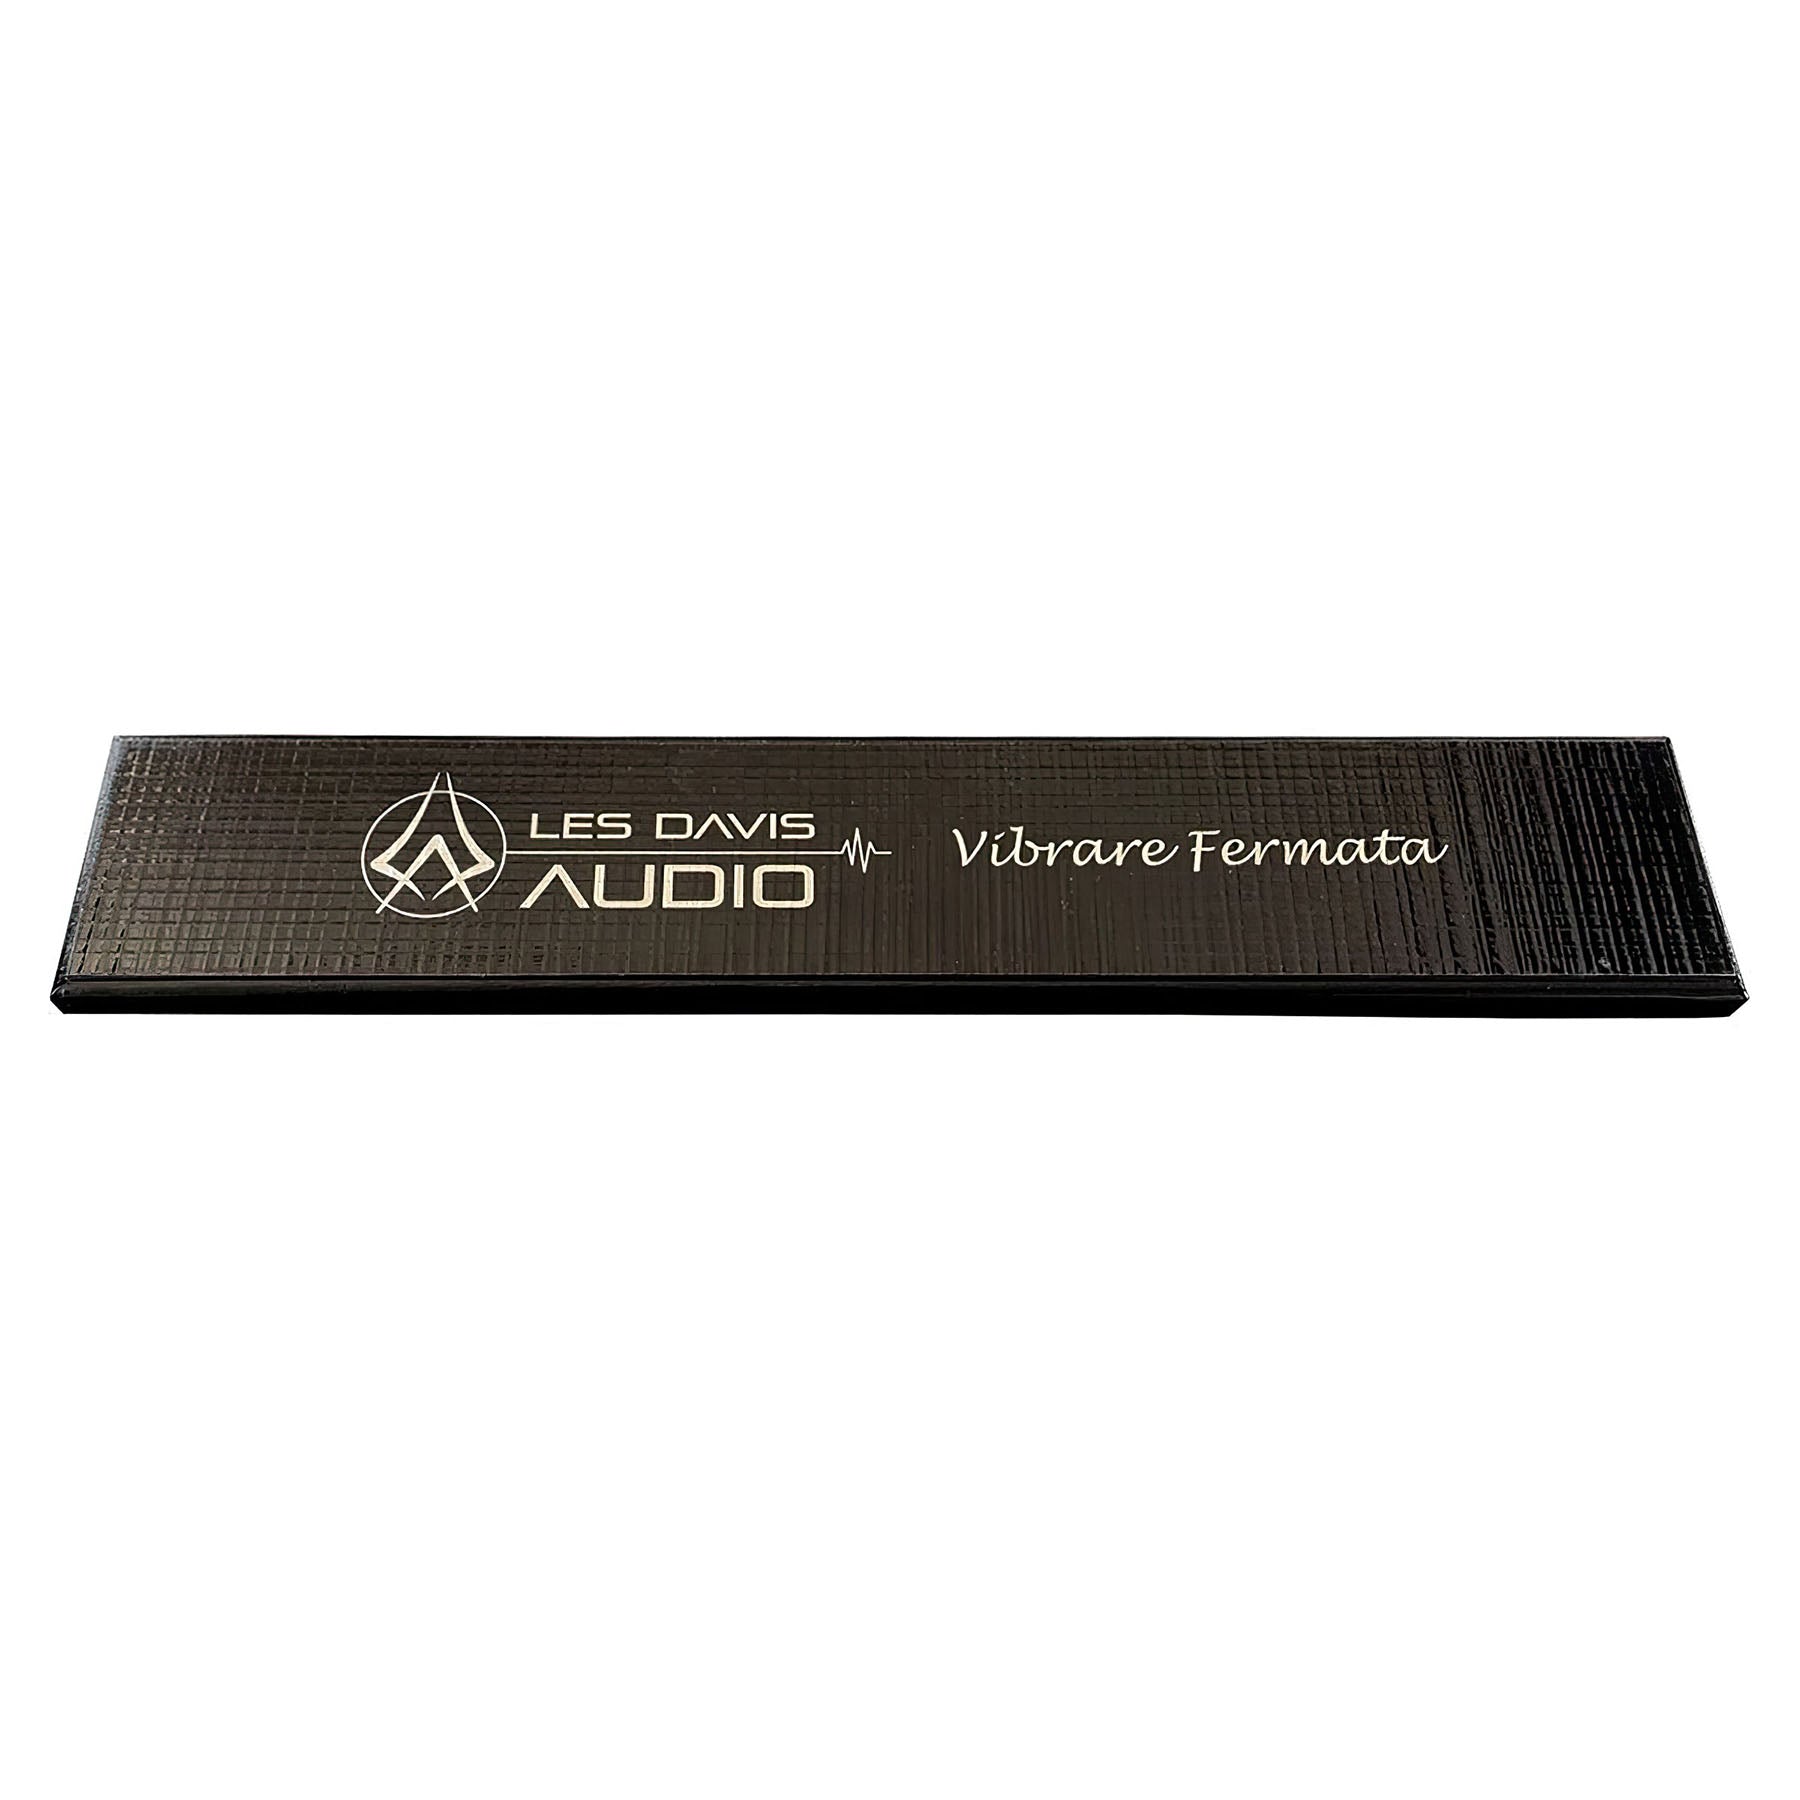 Les Davis Audio Vibrare Fermata Vibration Damping for Power Board